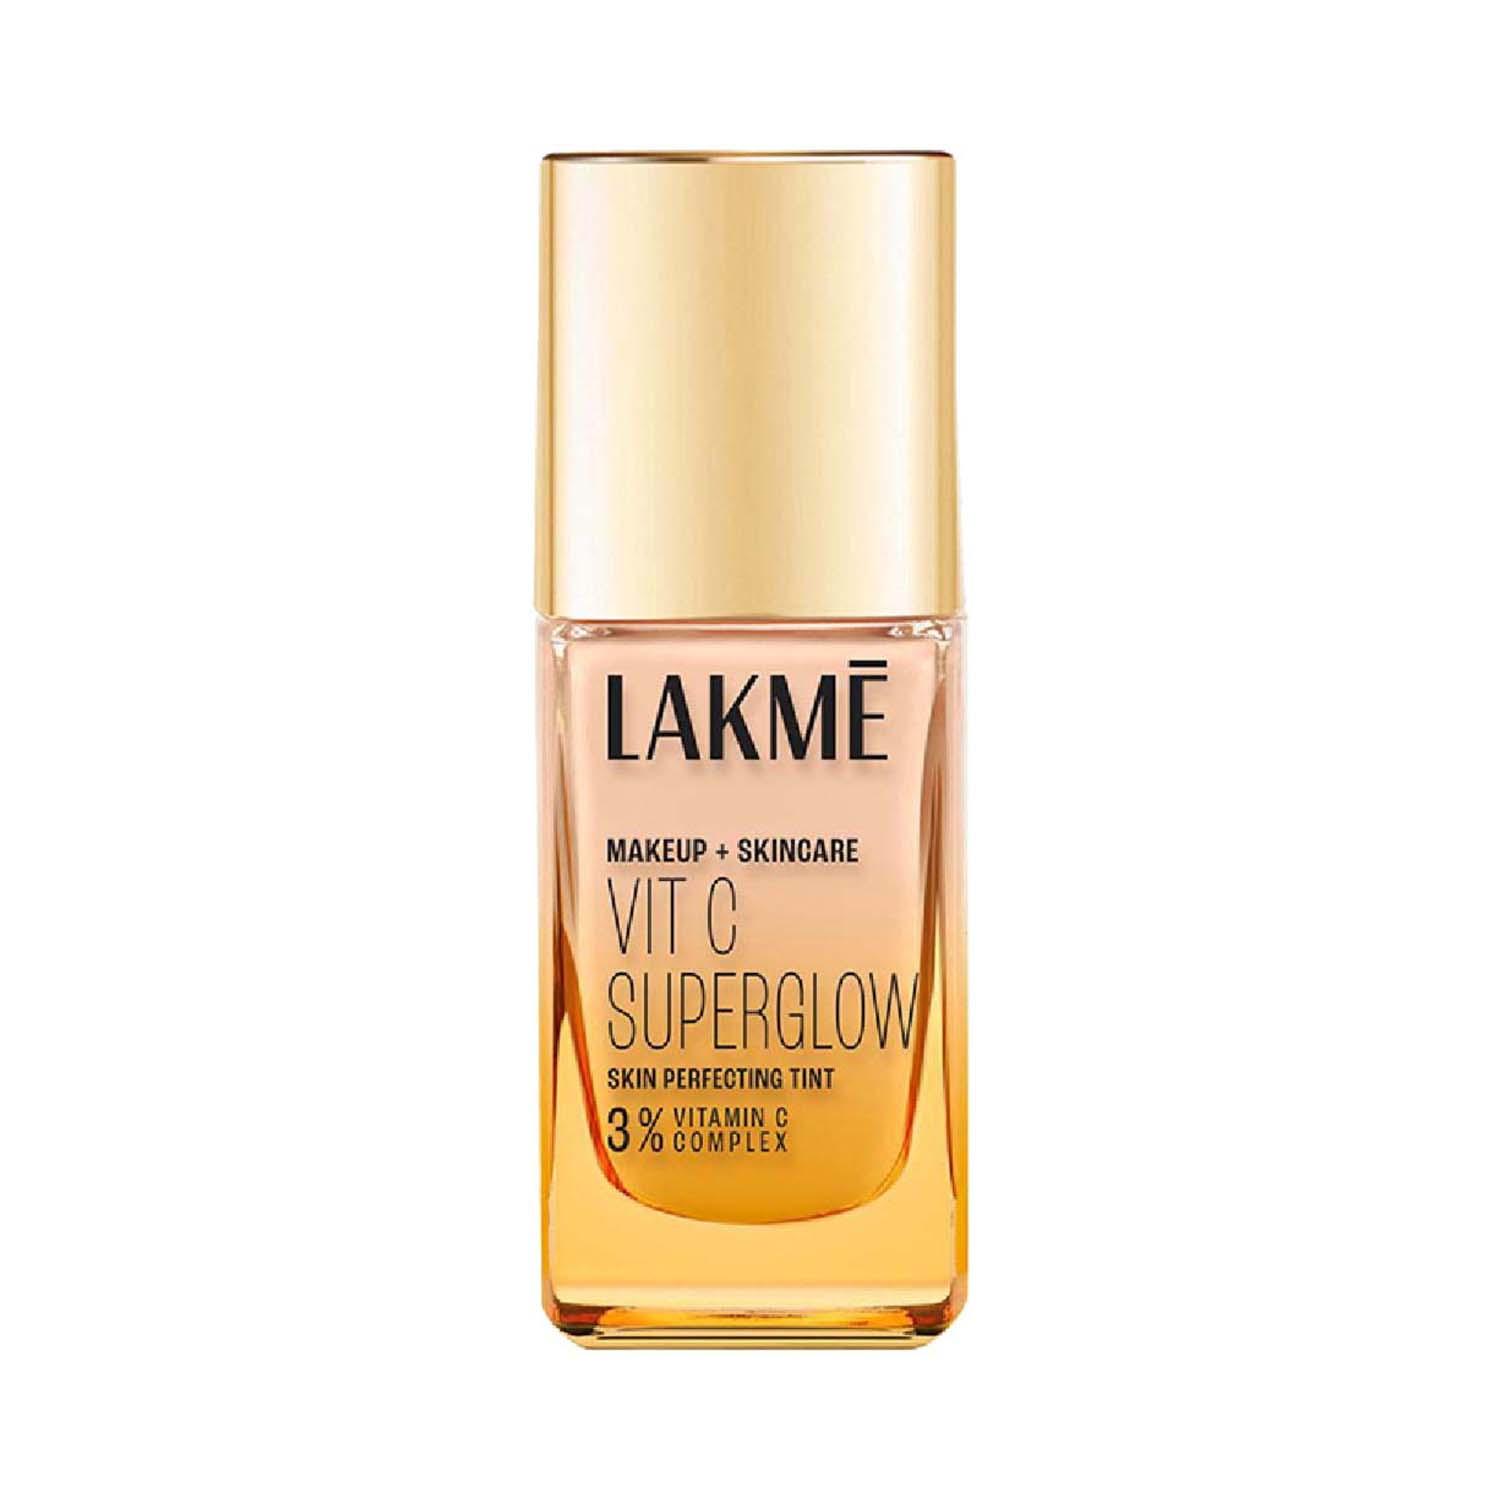 Lakme | Lakme Makeup+Skincare Vit C Superglow Skin Perfecting Tint - Cool Ivory C100 (25 ml)